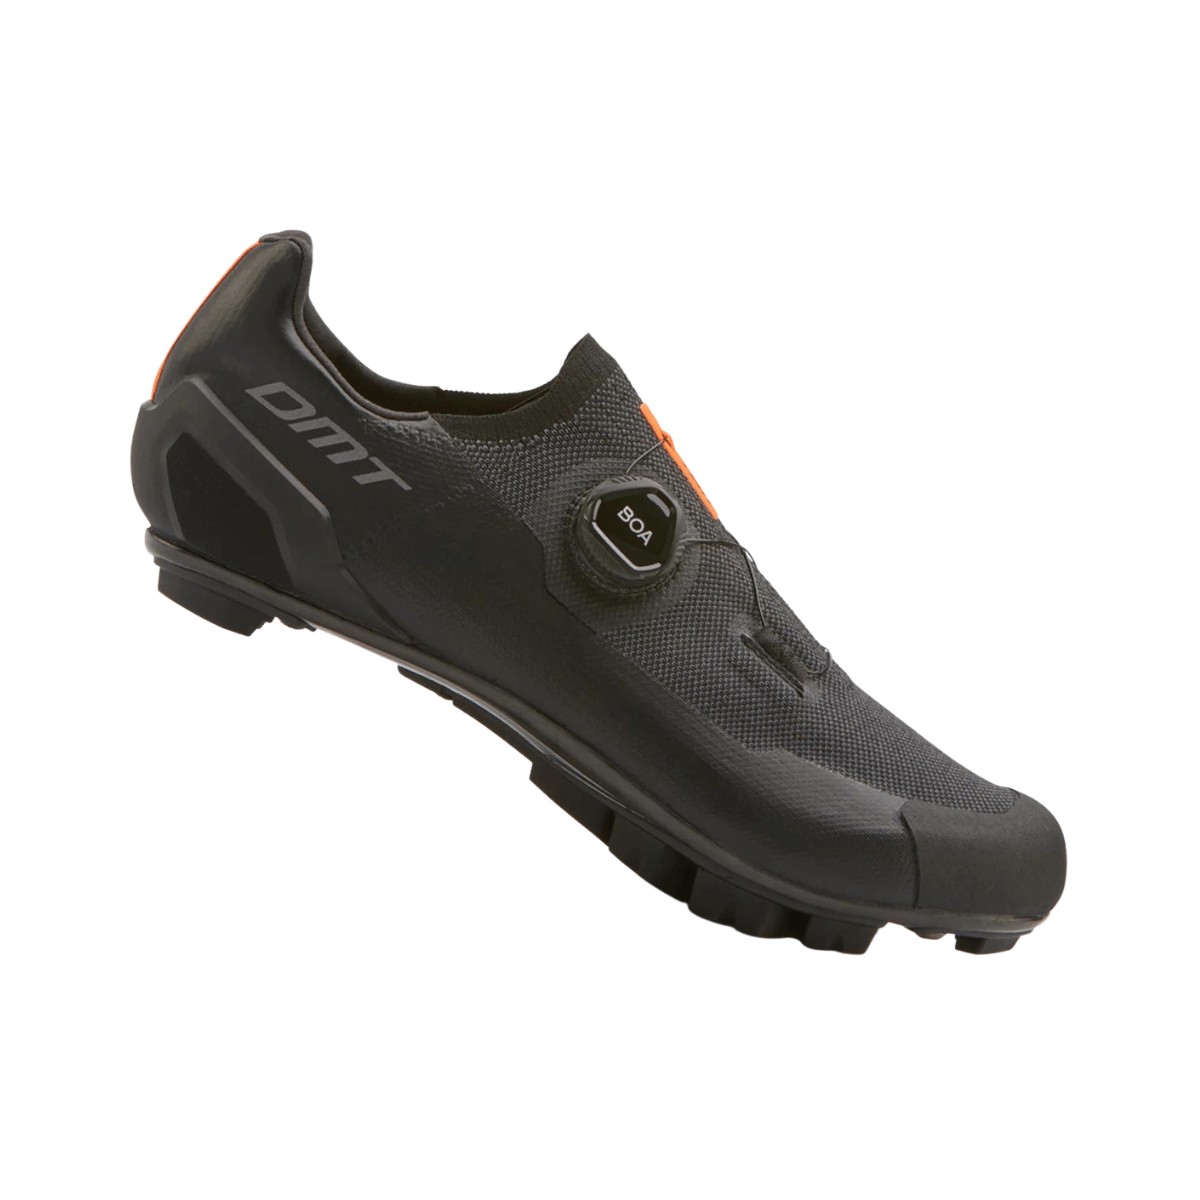 Shoes DMT KM30 Black AW22, Size 42 - EUR